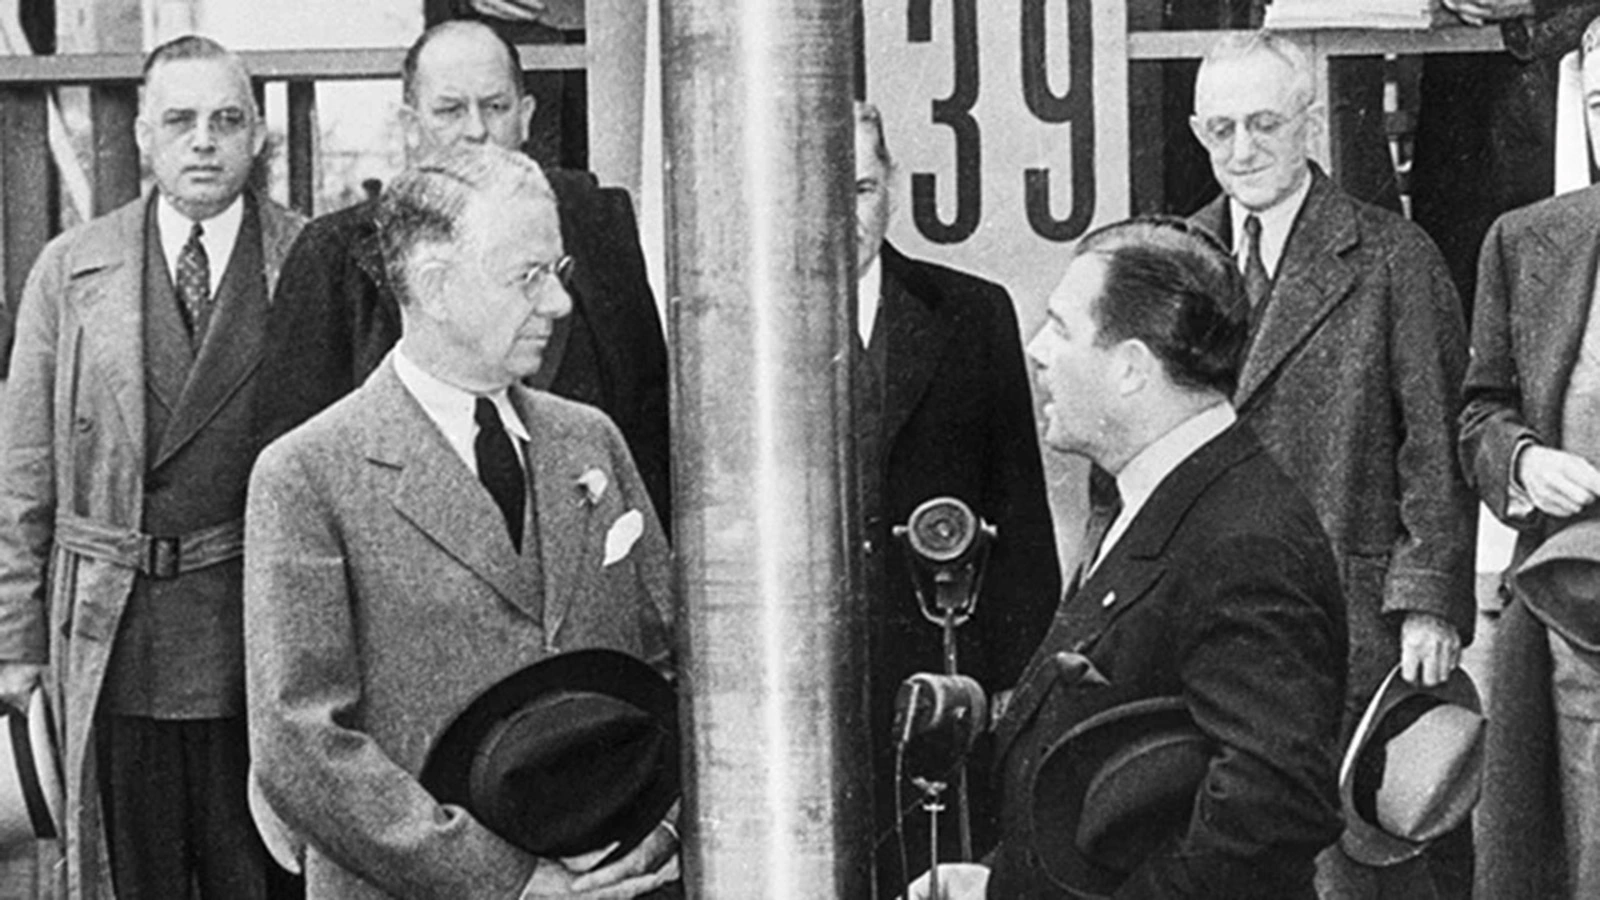 <p>Церемония захоронения капсулы времени&nbsp;компании Westinghouse в 1939 году</p>

<p></p>